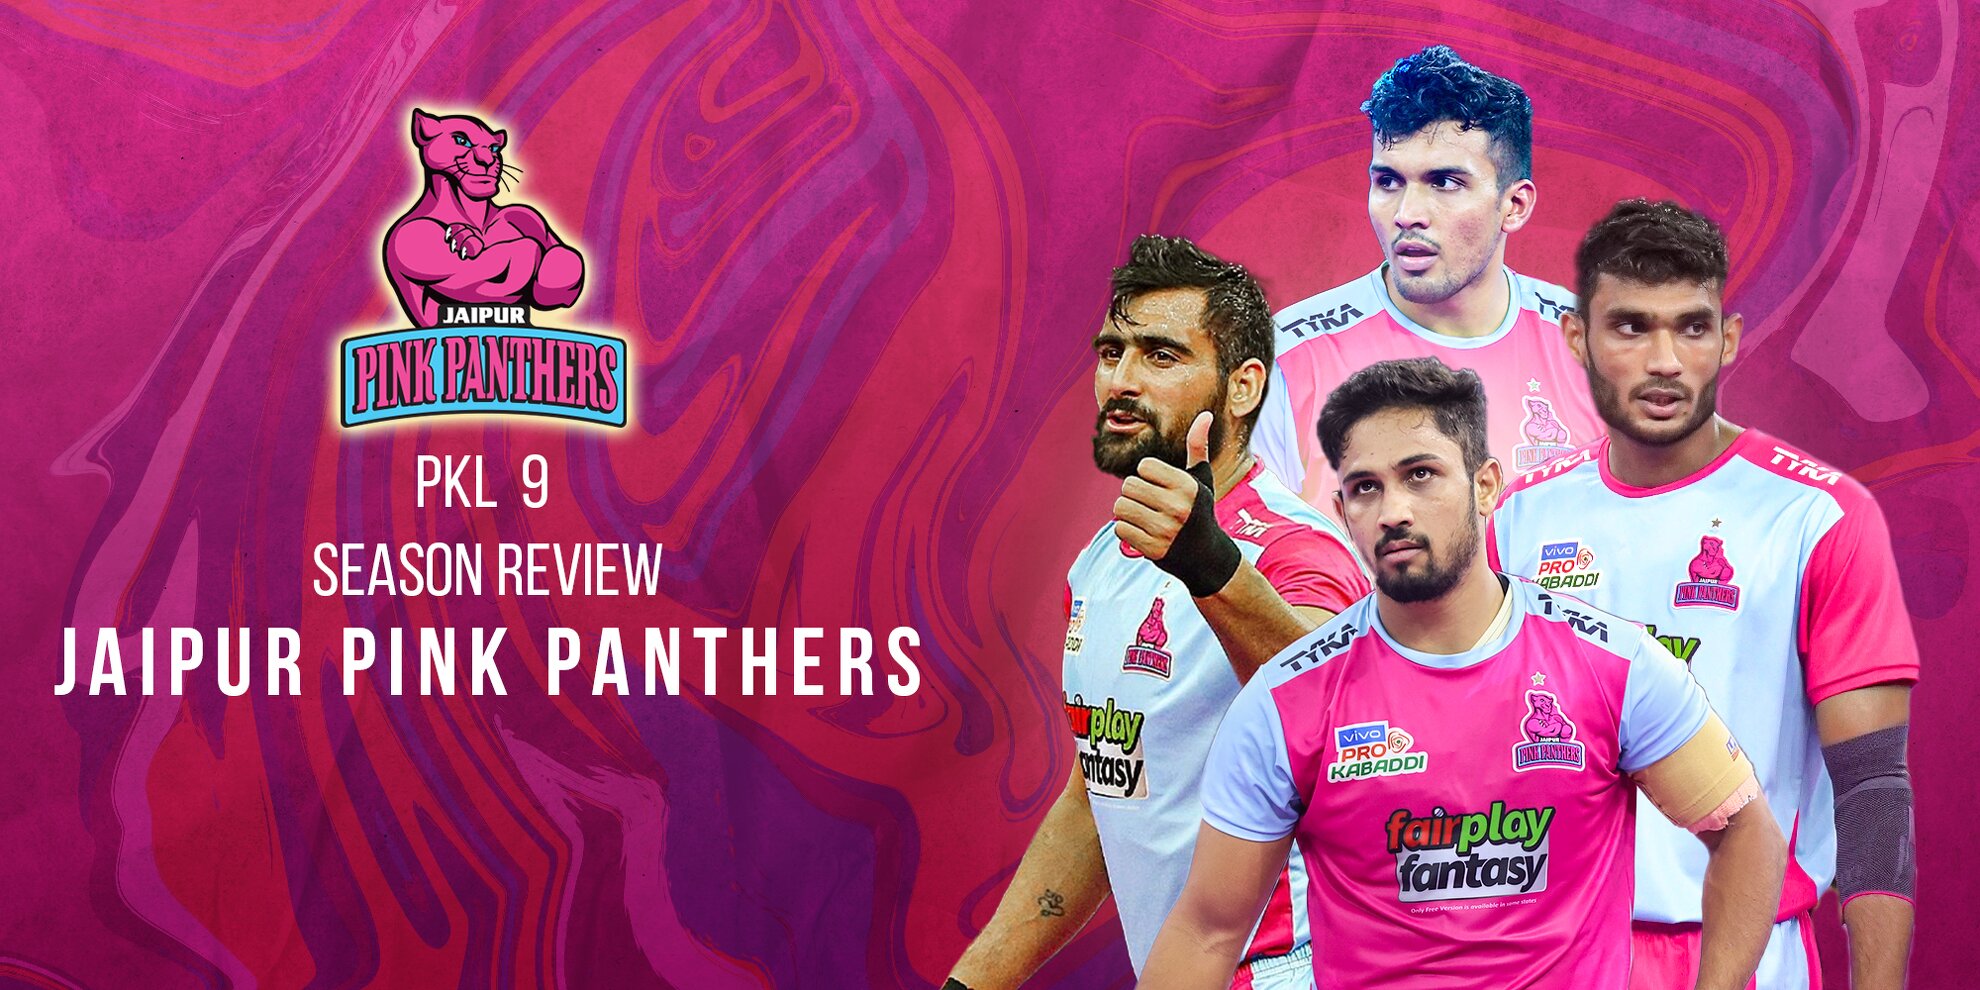 Jaipur Pink Panthers PKL 9